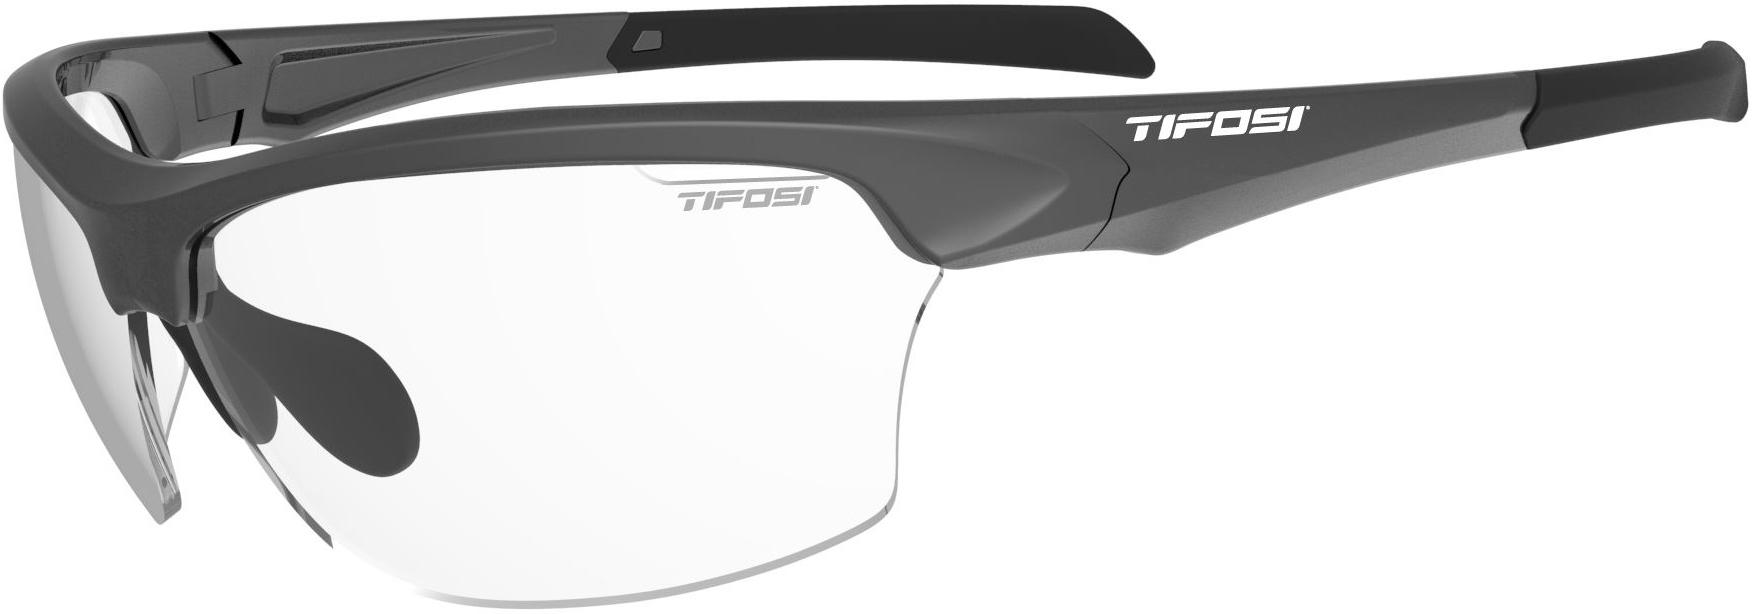 Tifosi Eyewear Intense Sunglasses - Grey